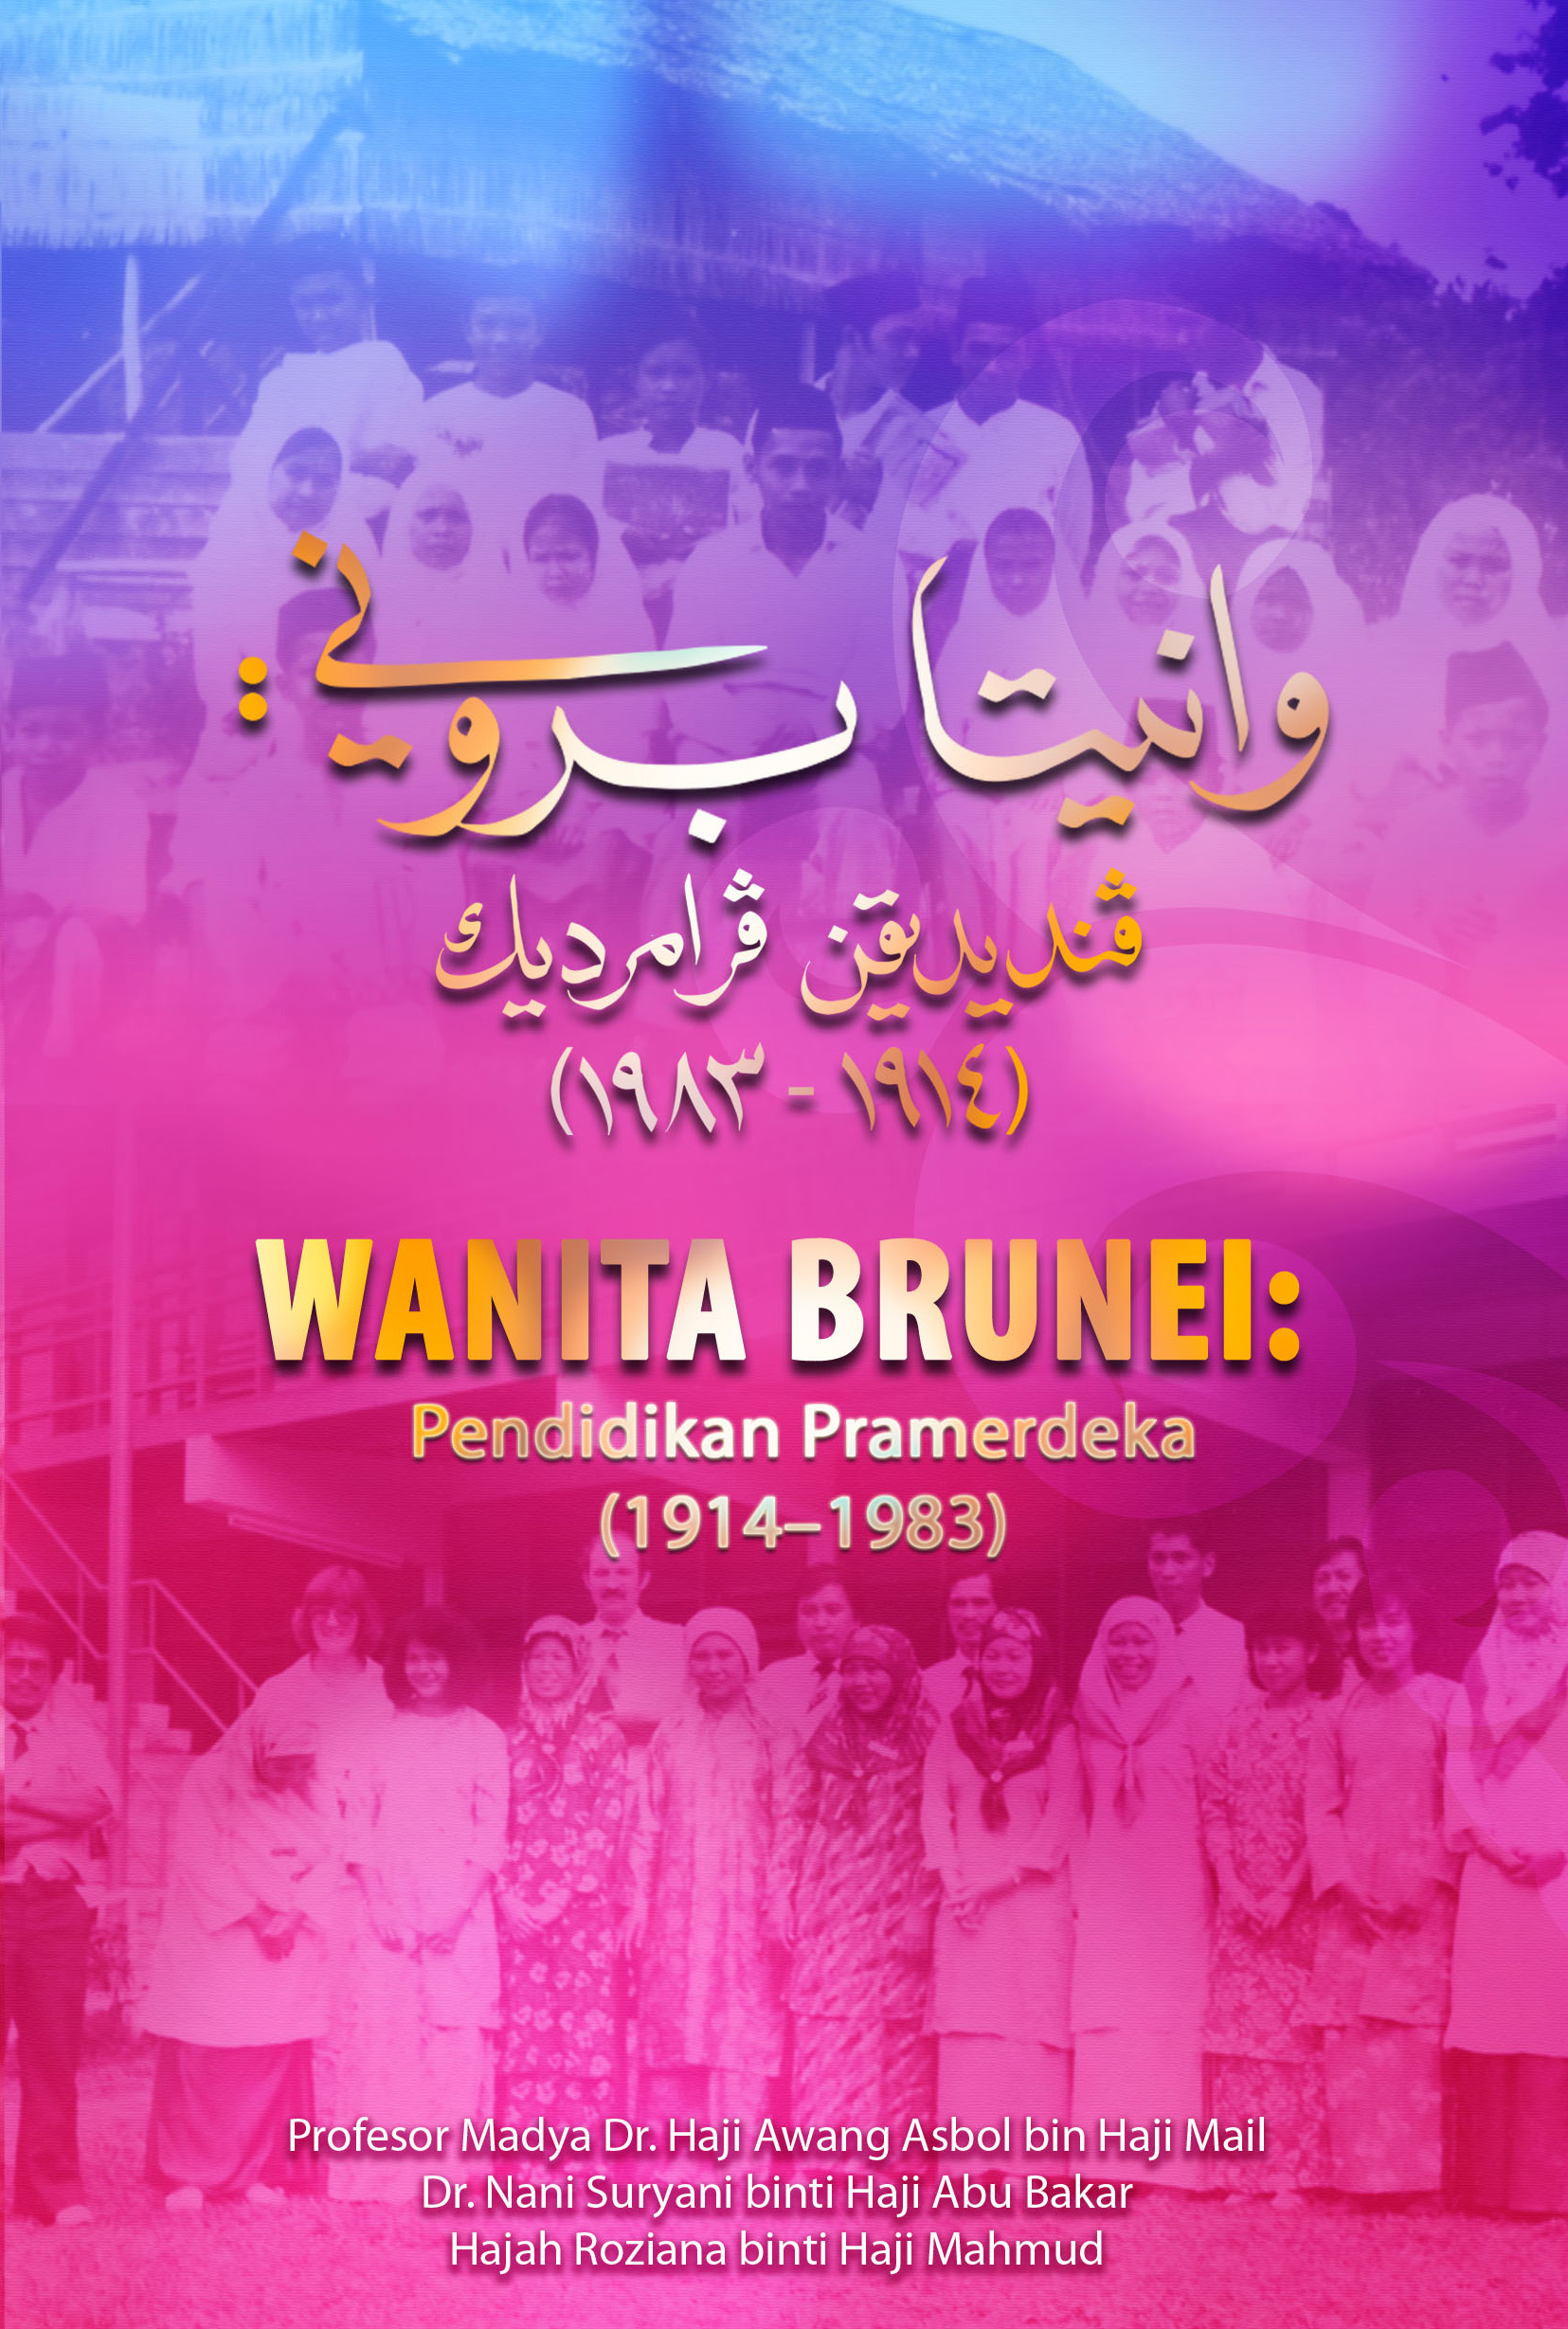 Wanita Brunei.jpg